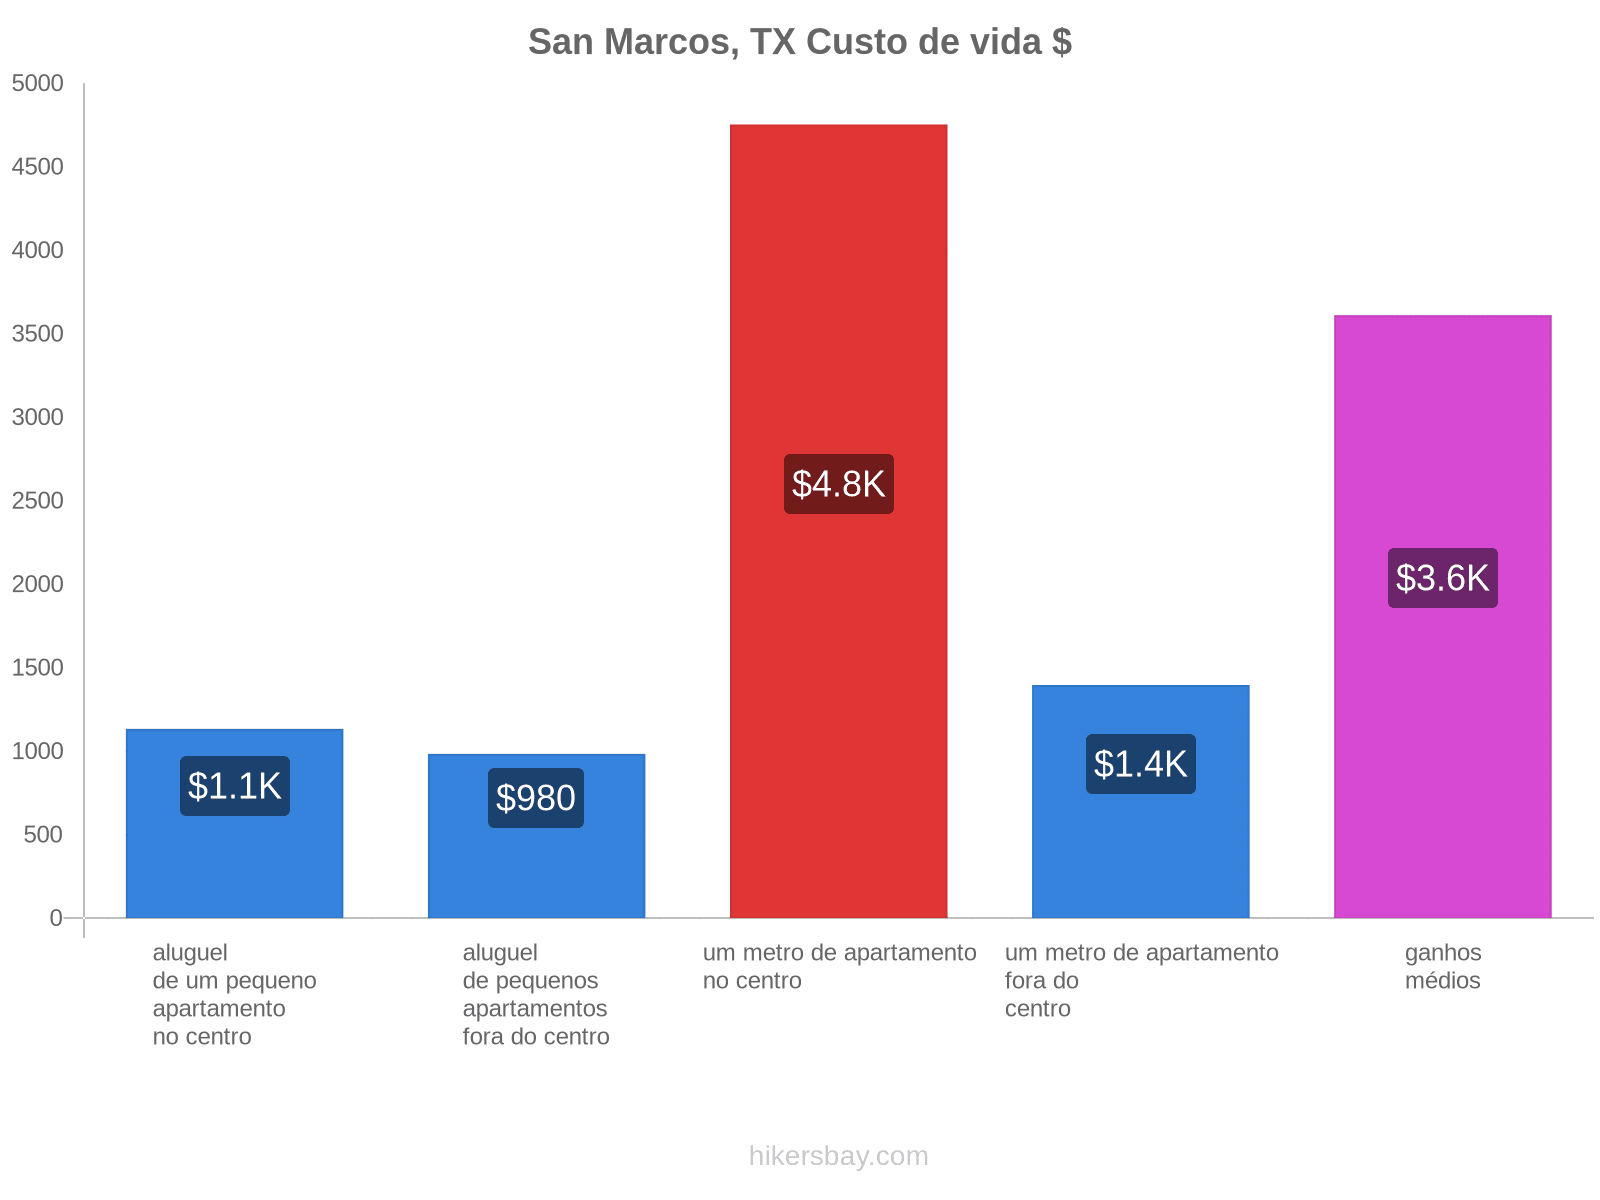 San Marcos, TX custo de vida hikersbay.com